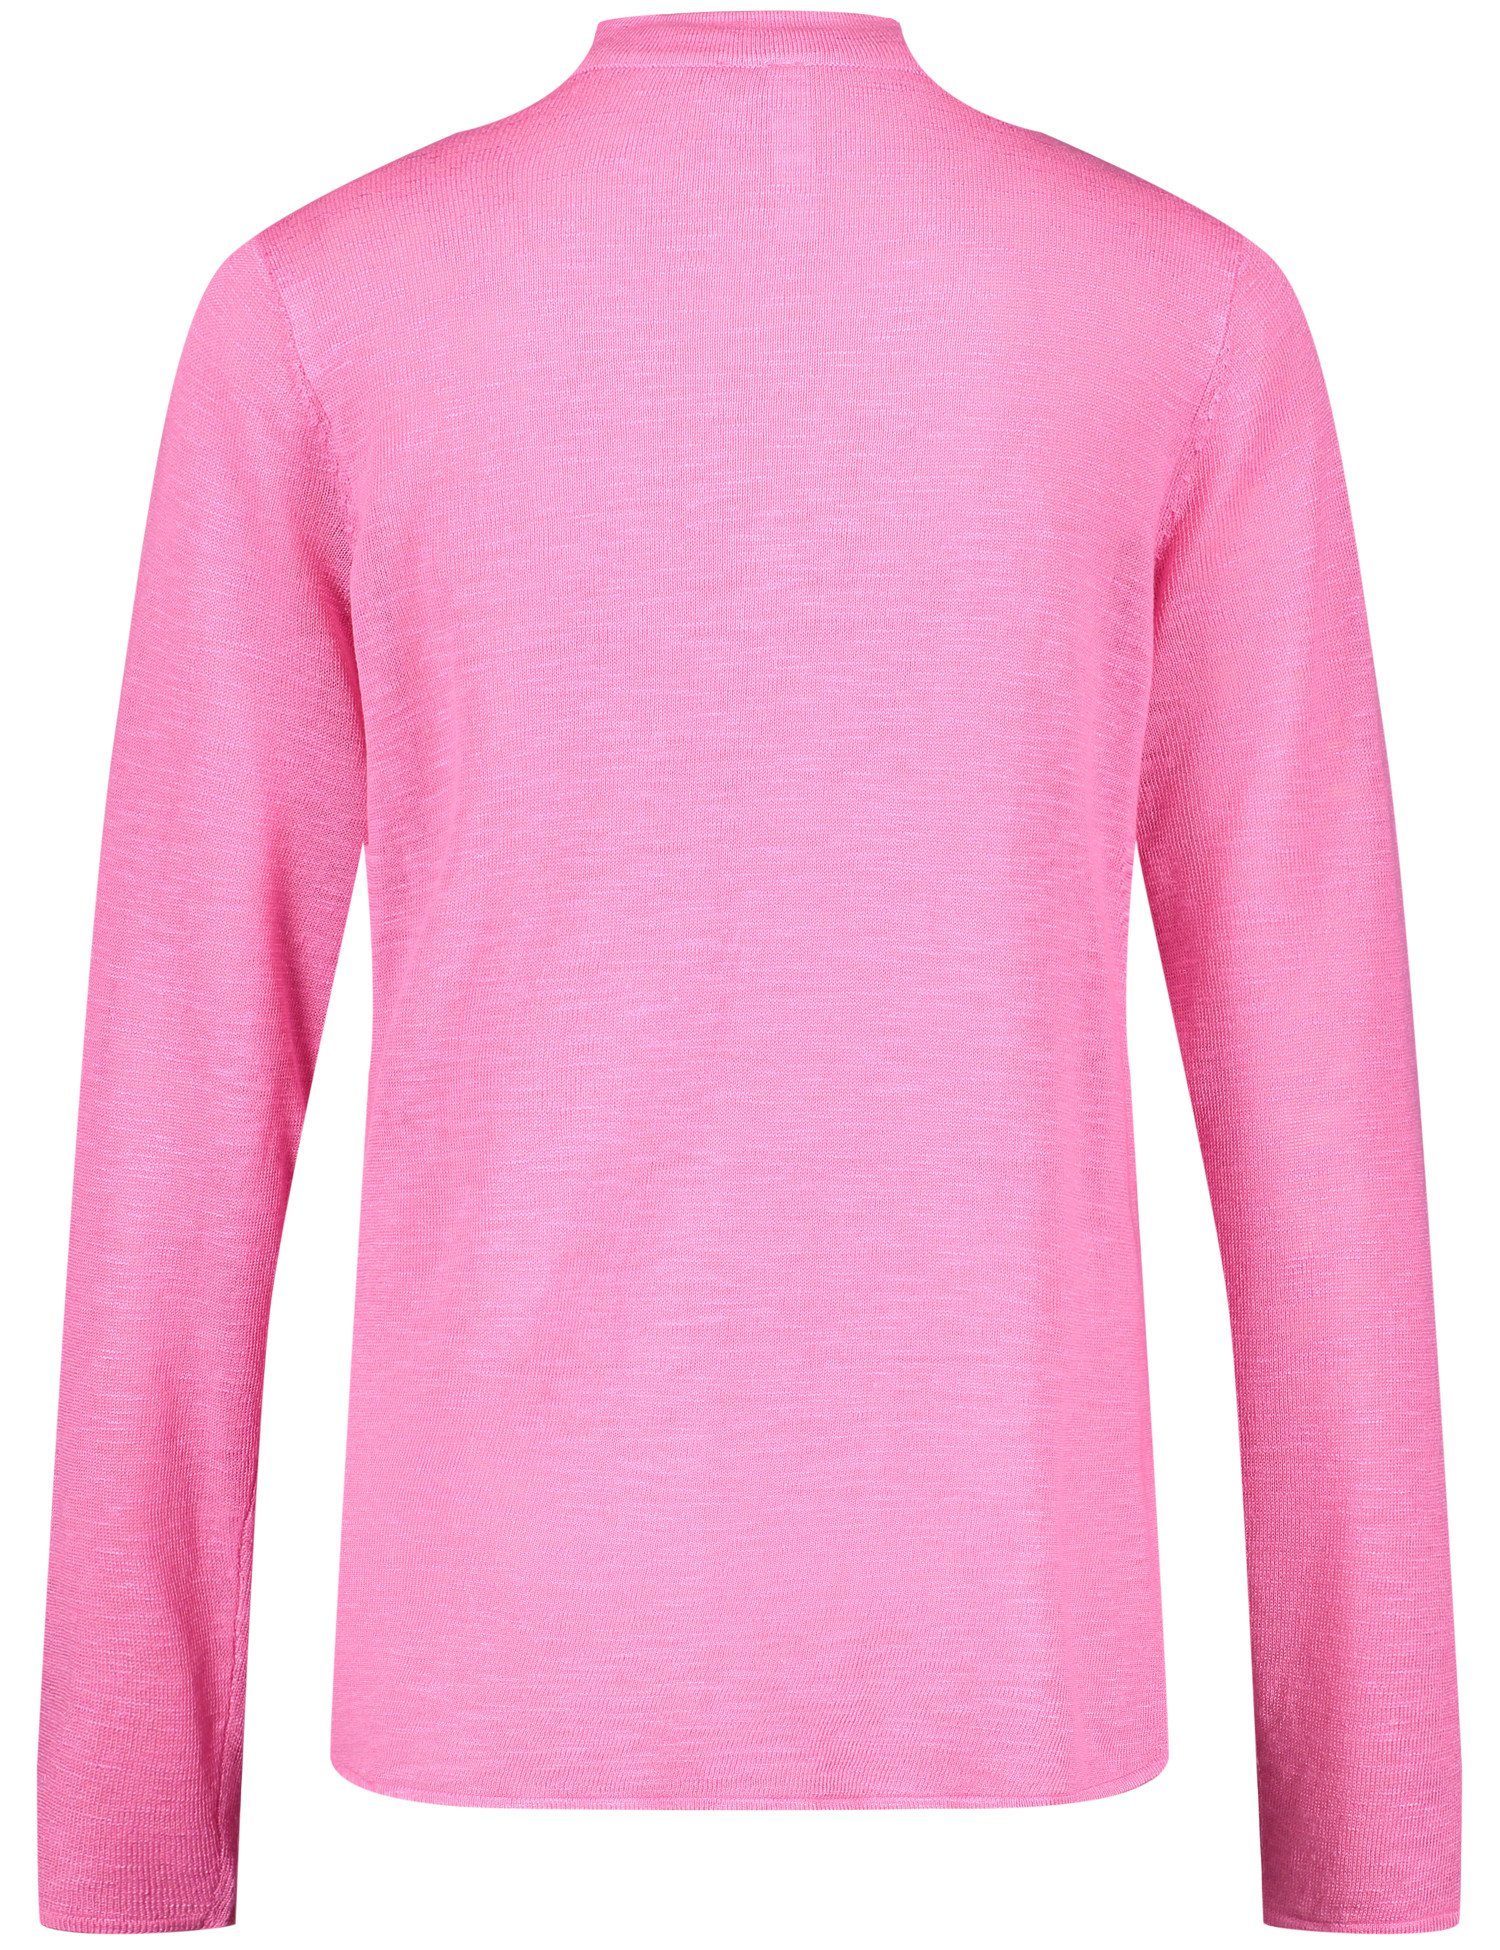 GERRY WEBER Seitenschlitzen Offene Pink Strickjacke mit Cardigan Soft